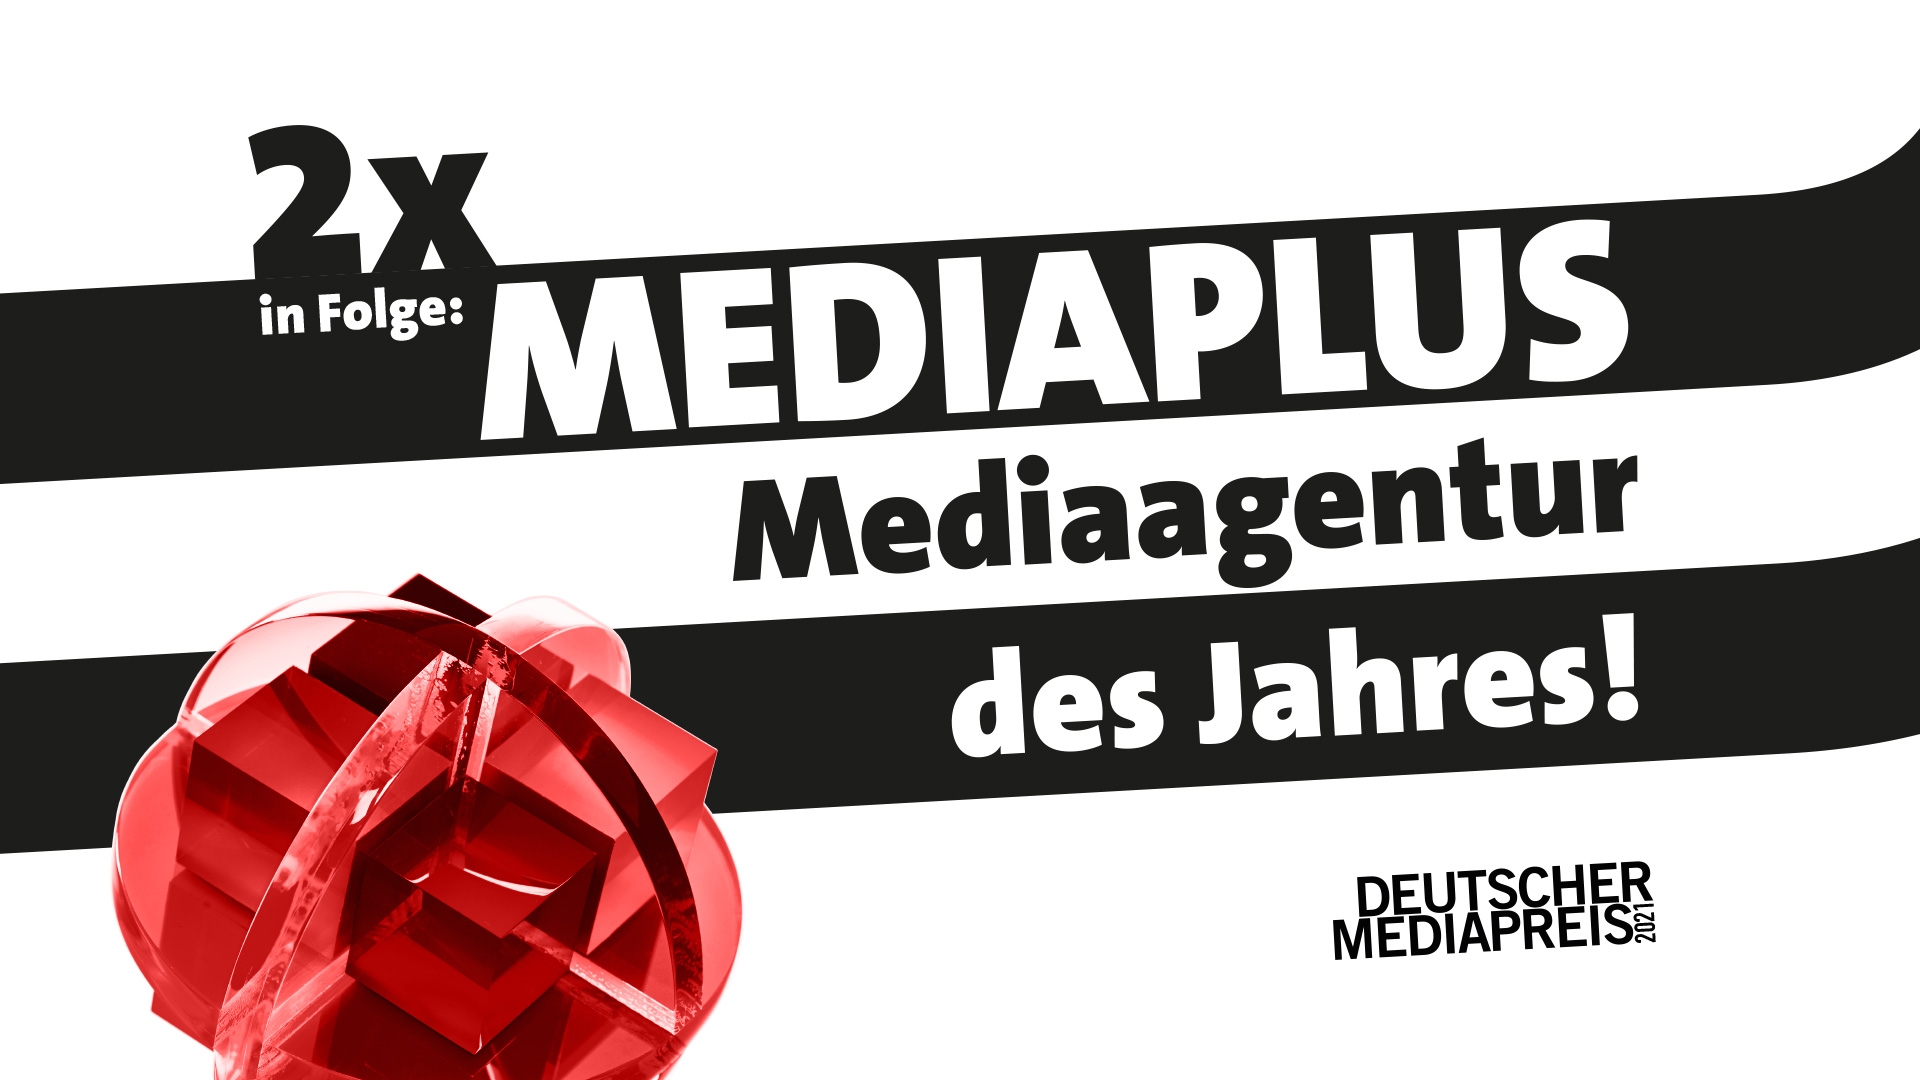 Mediaplus ist Mediaagentur des Jahres